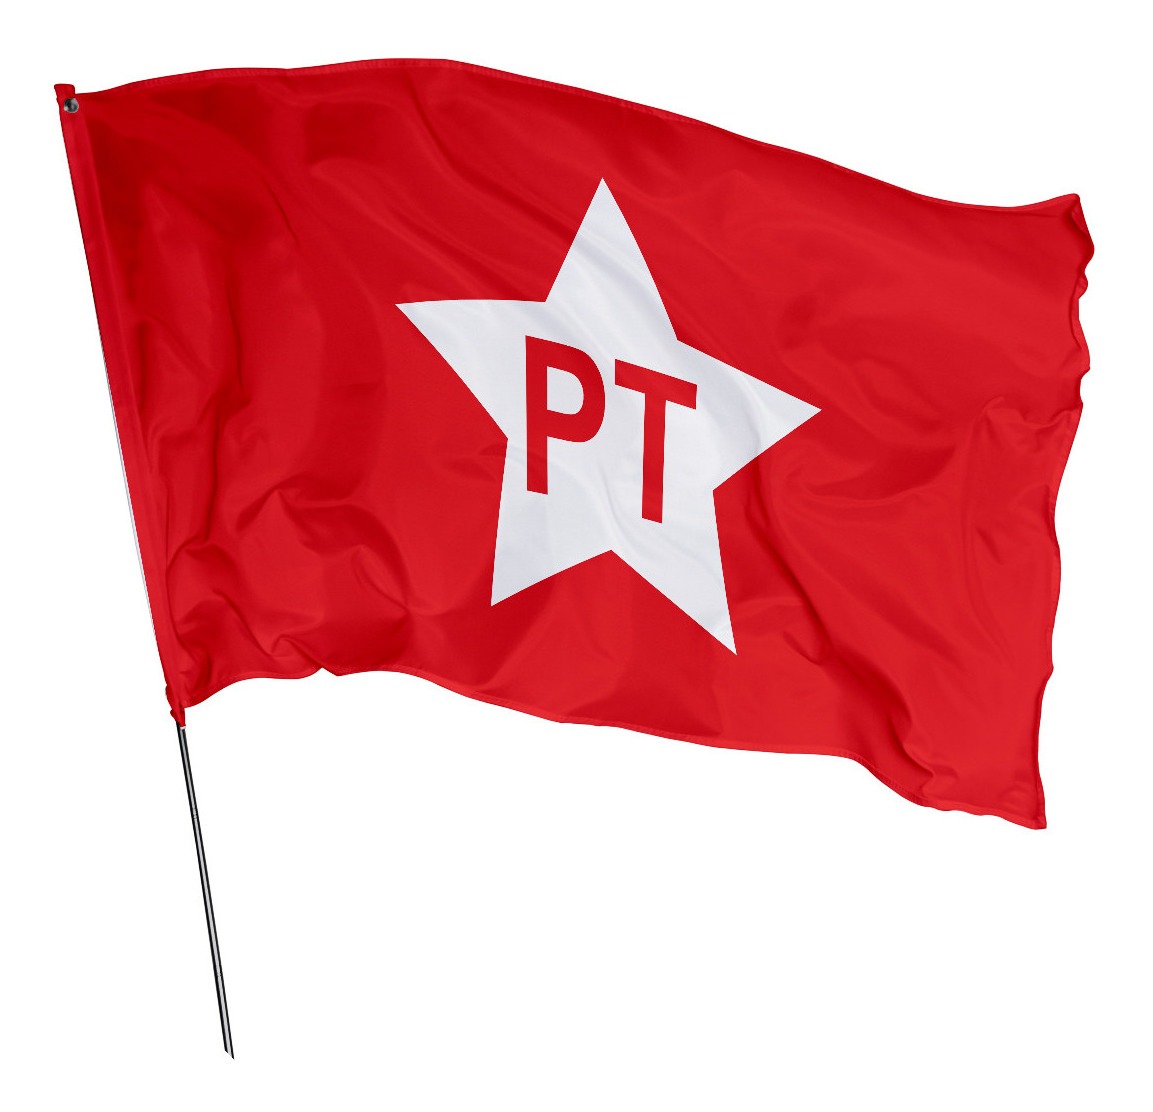 Bandeira Do Pt - Partido Dos Trabalhadores 1,45m X 1m | Parcelamento